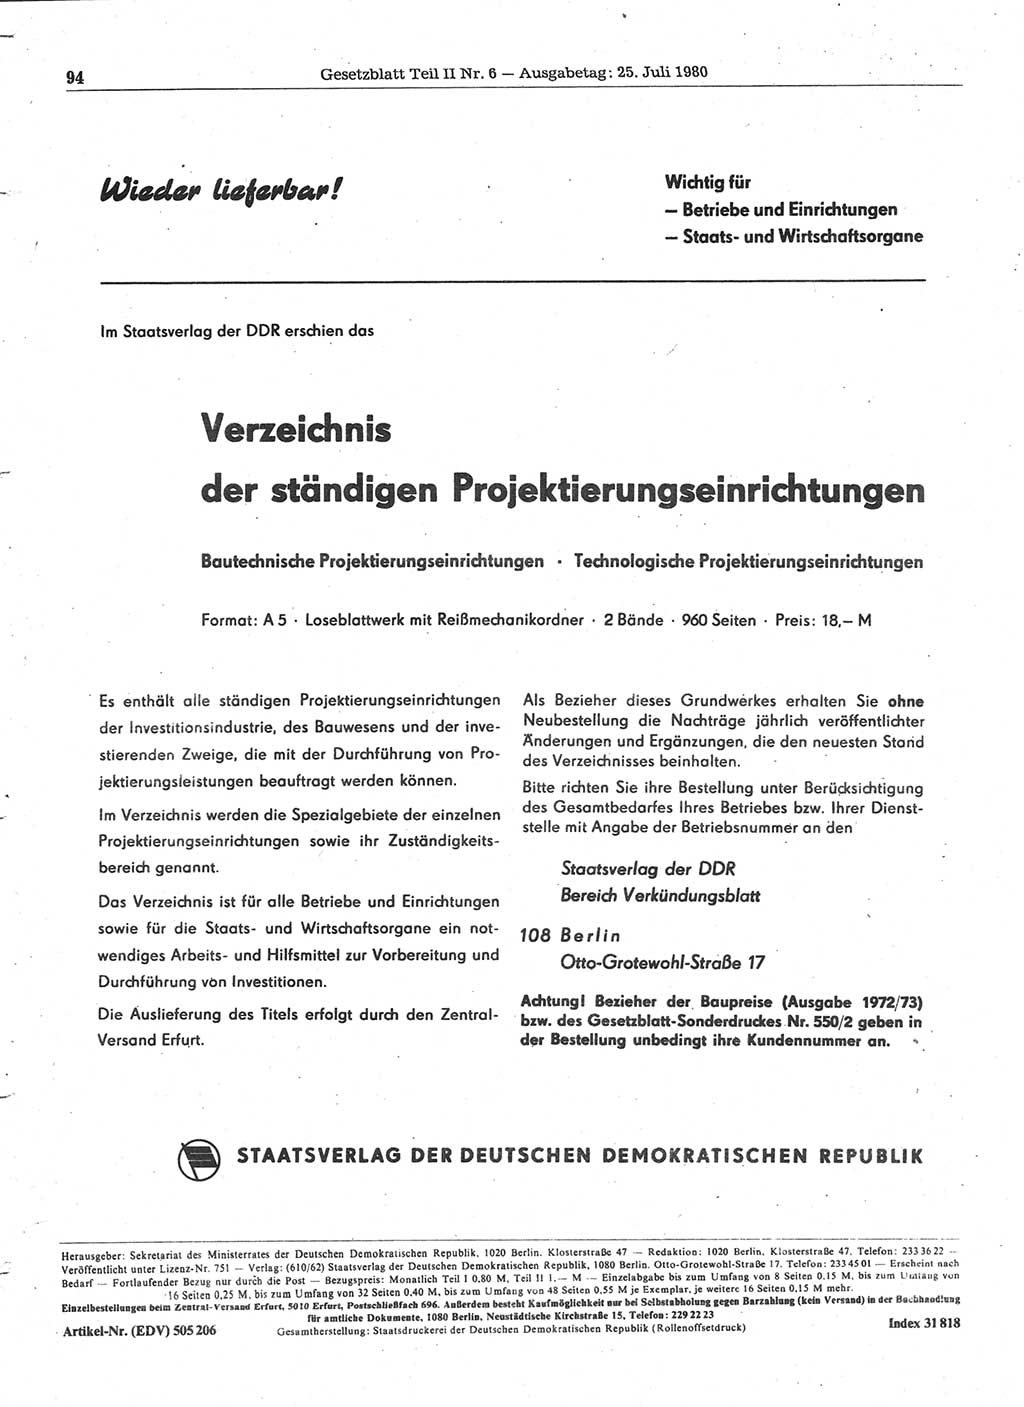 Gesetzblatt (GBl.) der Deutschen Demokratischen Republik (DDR) Teil ⅠⅠ 1980, Seite 94 (GBl. DDR ⅠⅠ 1980, S. 94)